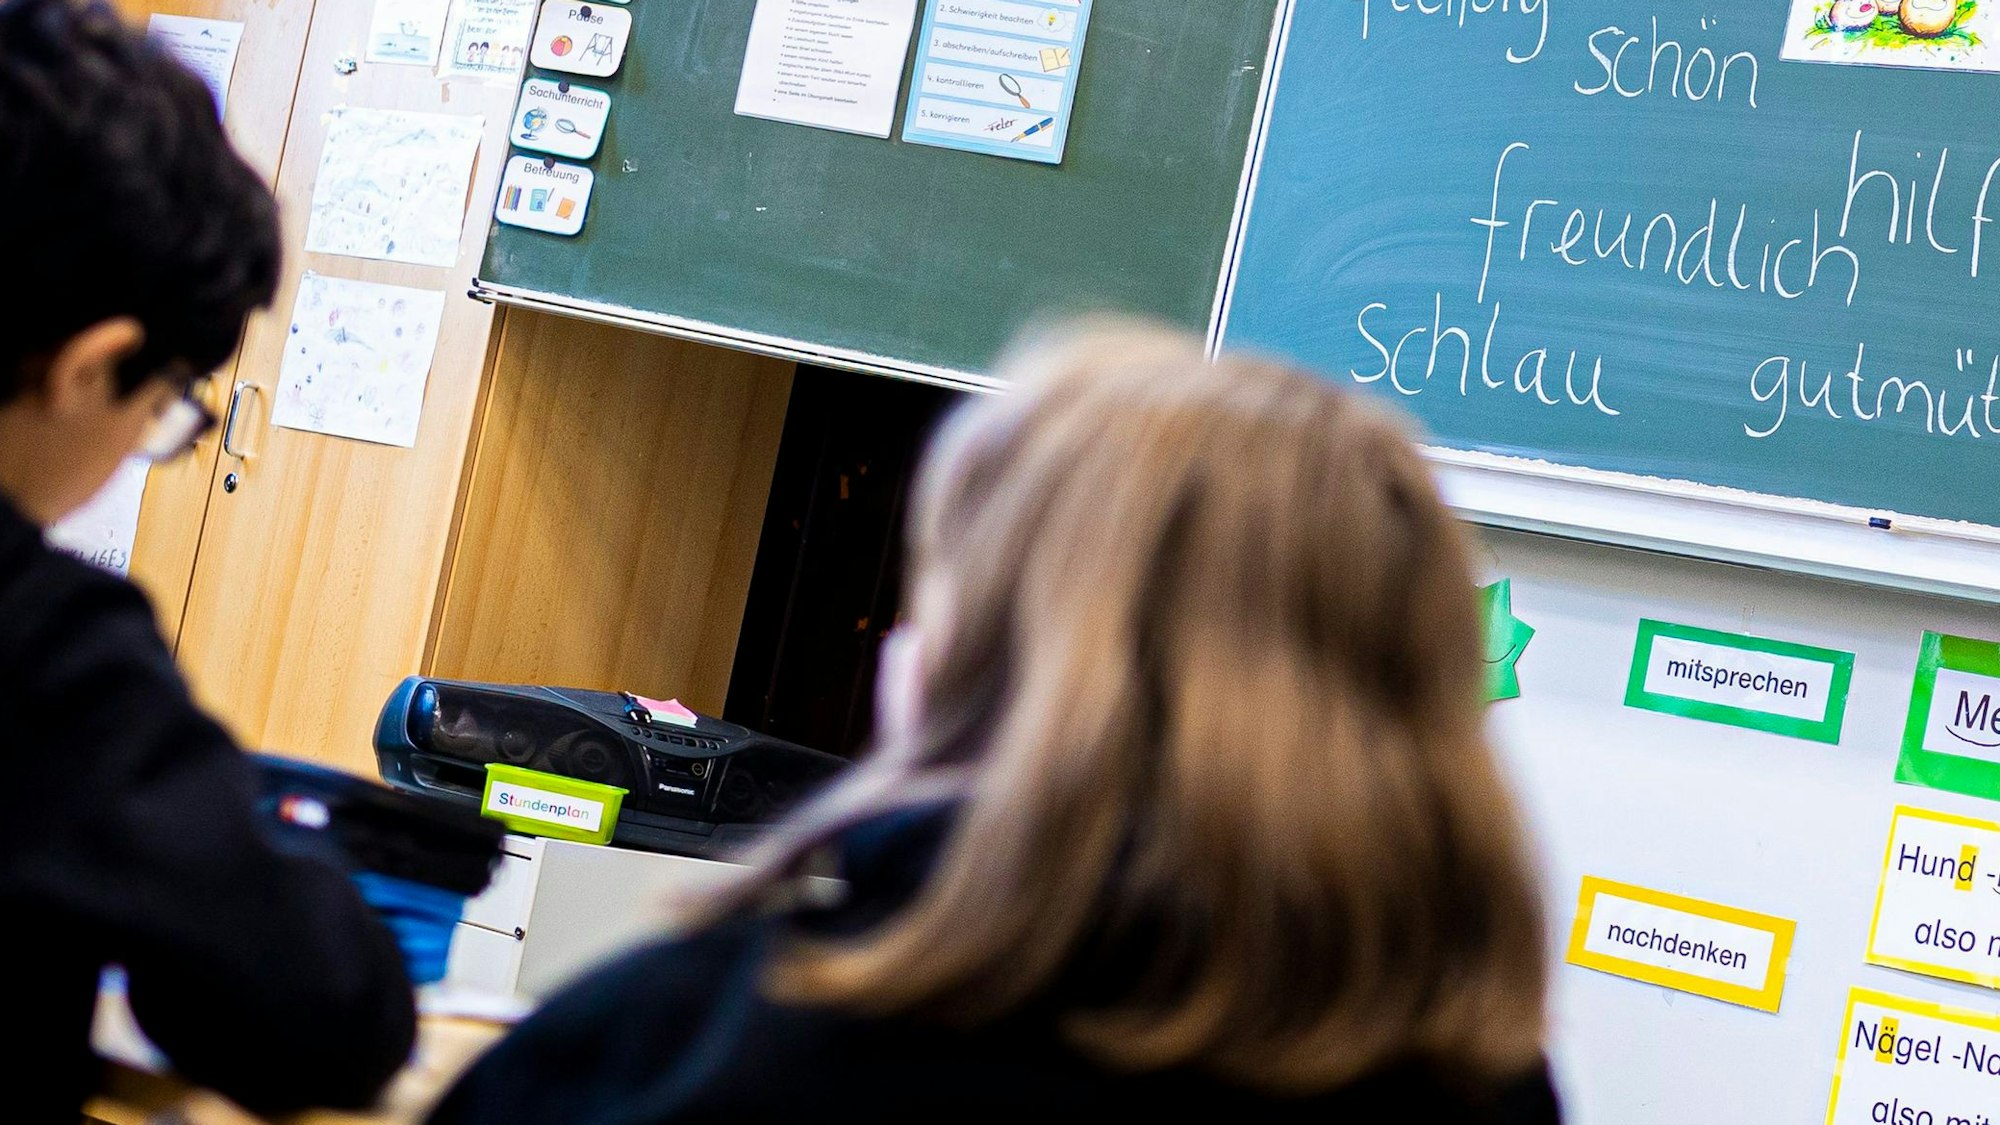 Drei Kinder in Schwarz sitzen in einem Klassenraum vor einer Tafel, die mit Adjektiven beschrieben ist.